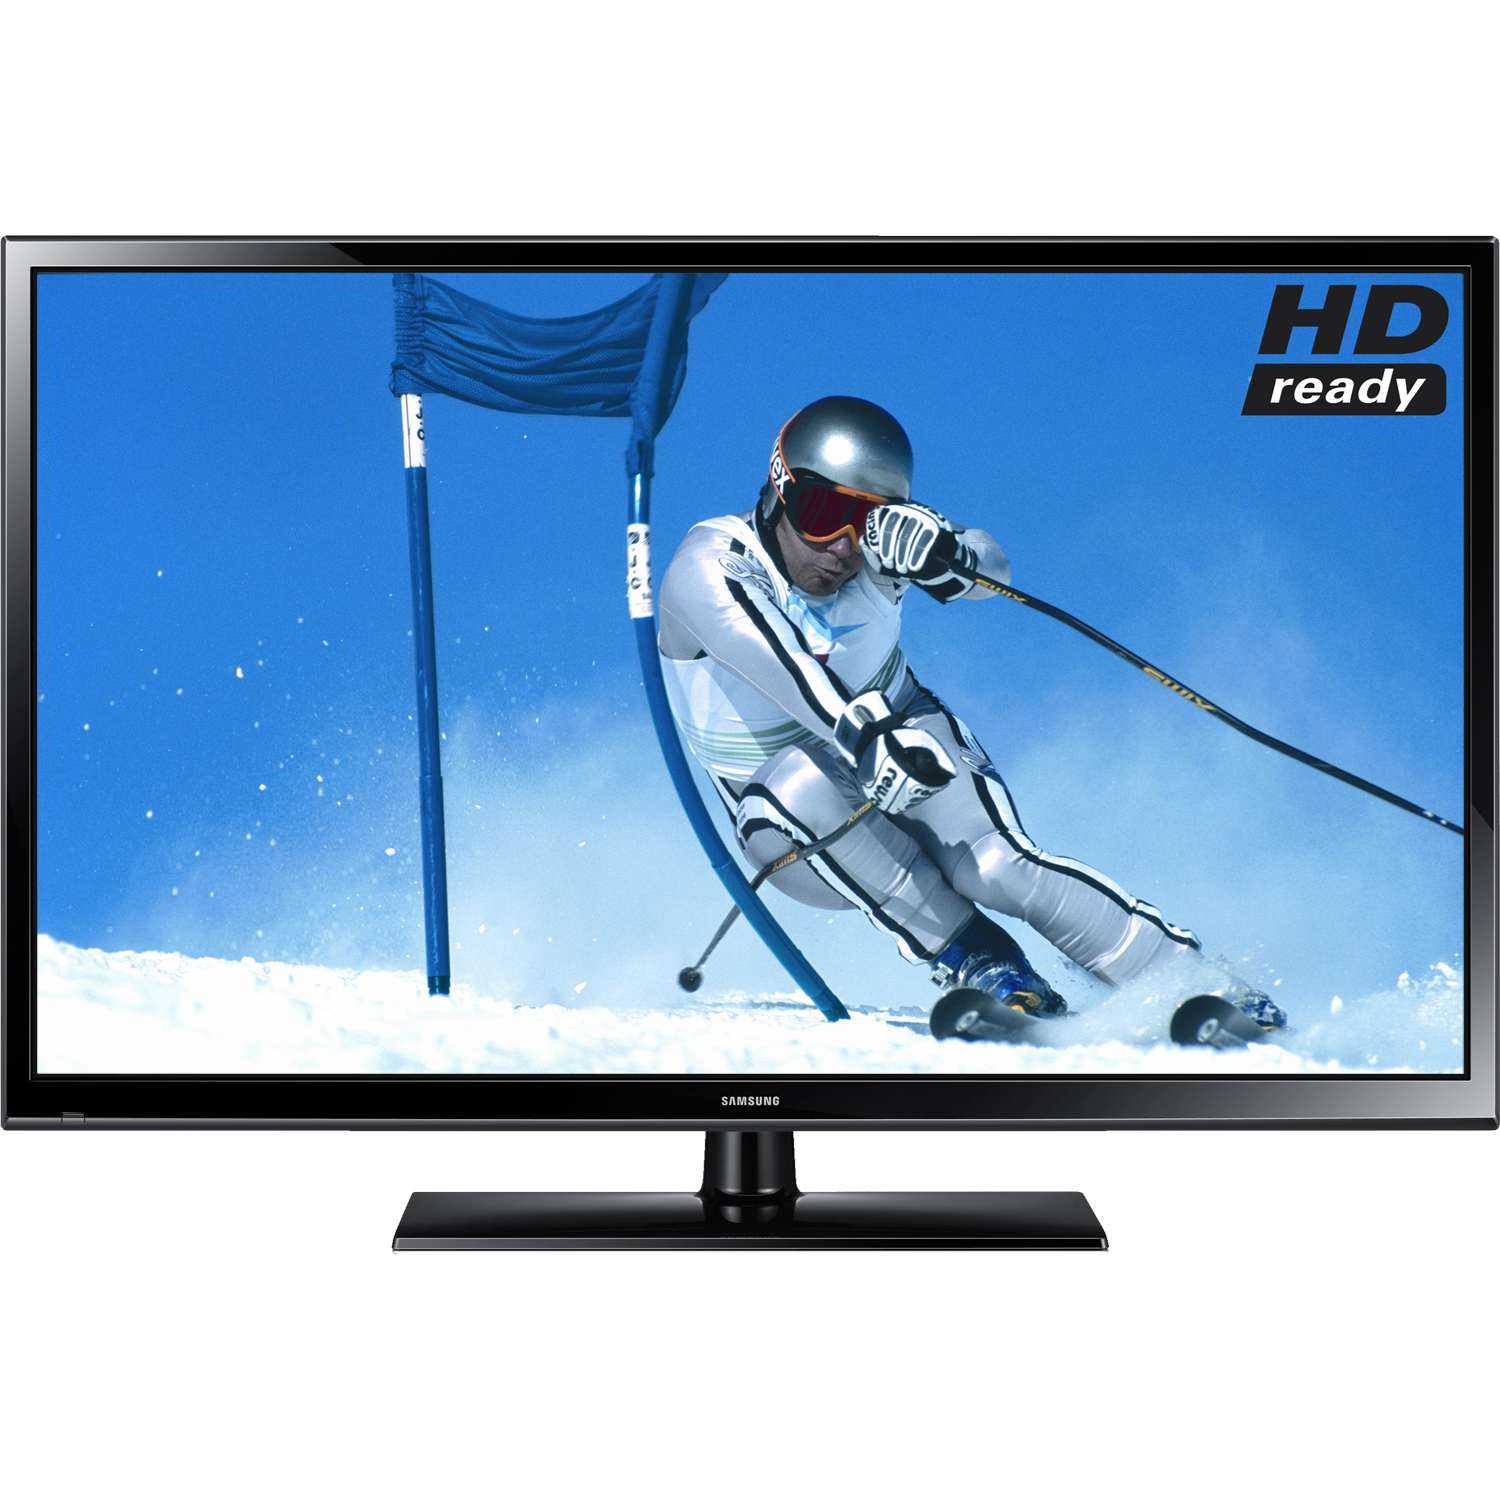 Телевизор плазменный samsung pe51h4500ak - купить , скидки, цена, отзывы, обзор, характеристики - телевизоры